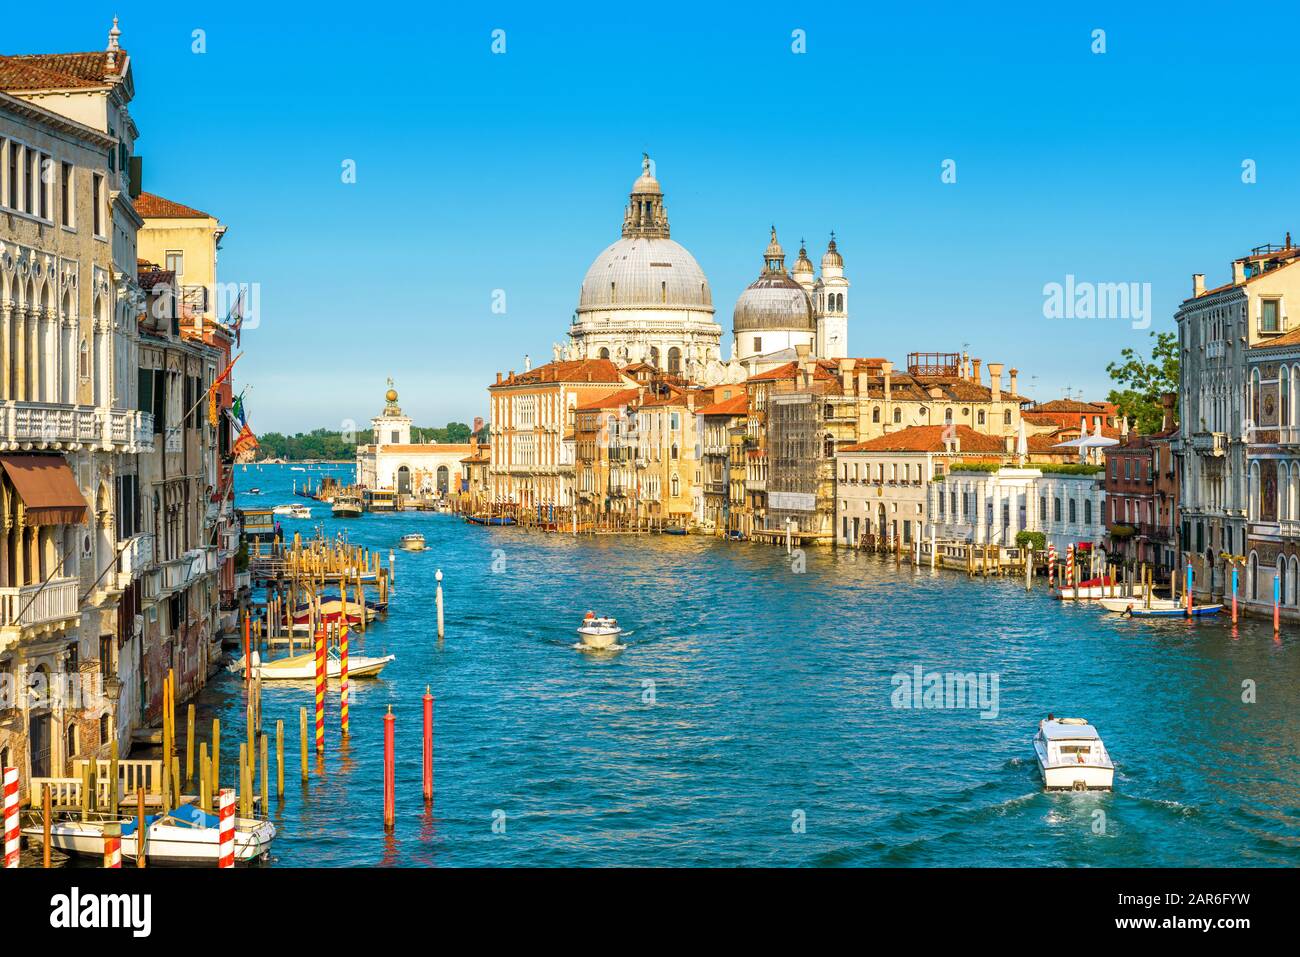 Canal Grande in Venedig an einem sonnigen Tag, Italien. Venedig im Sonnenlicht. Panoramaaussicht auf Venedig im Sommer. Stadtbild und Landschaft Venedigs. Rom Stockfoto